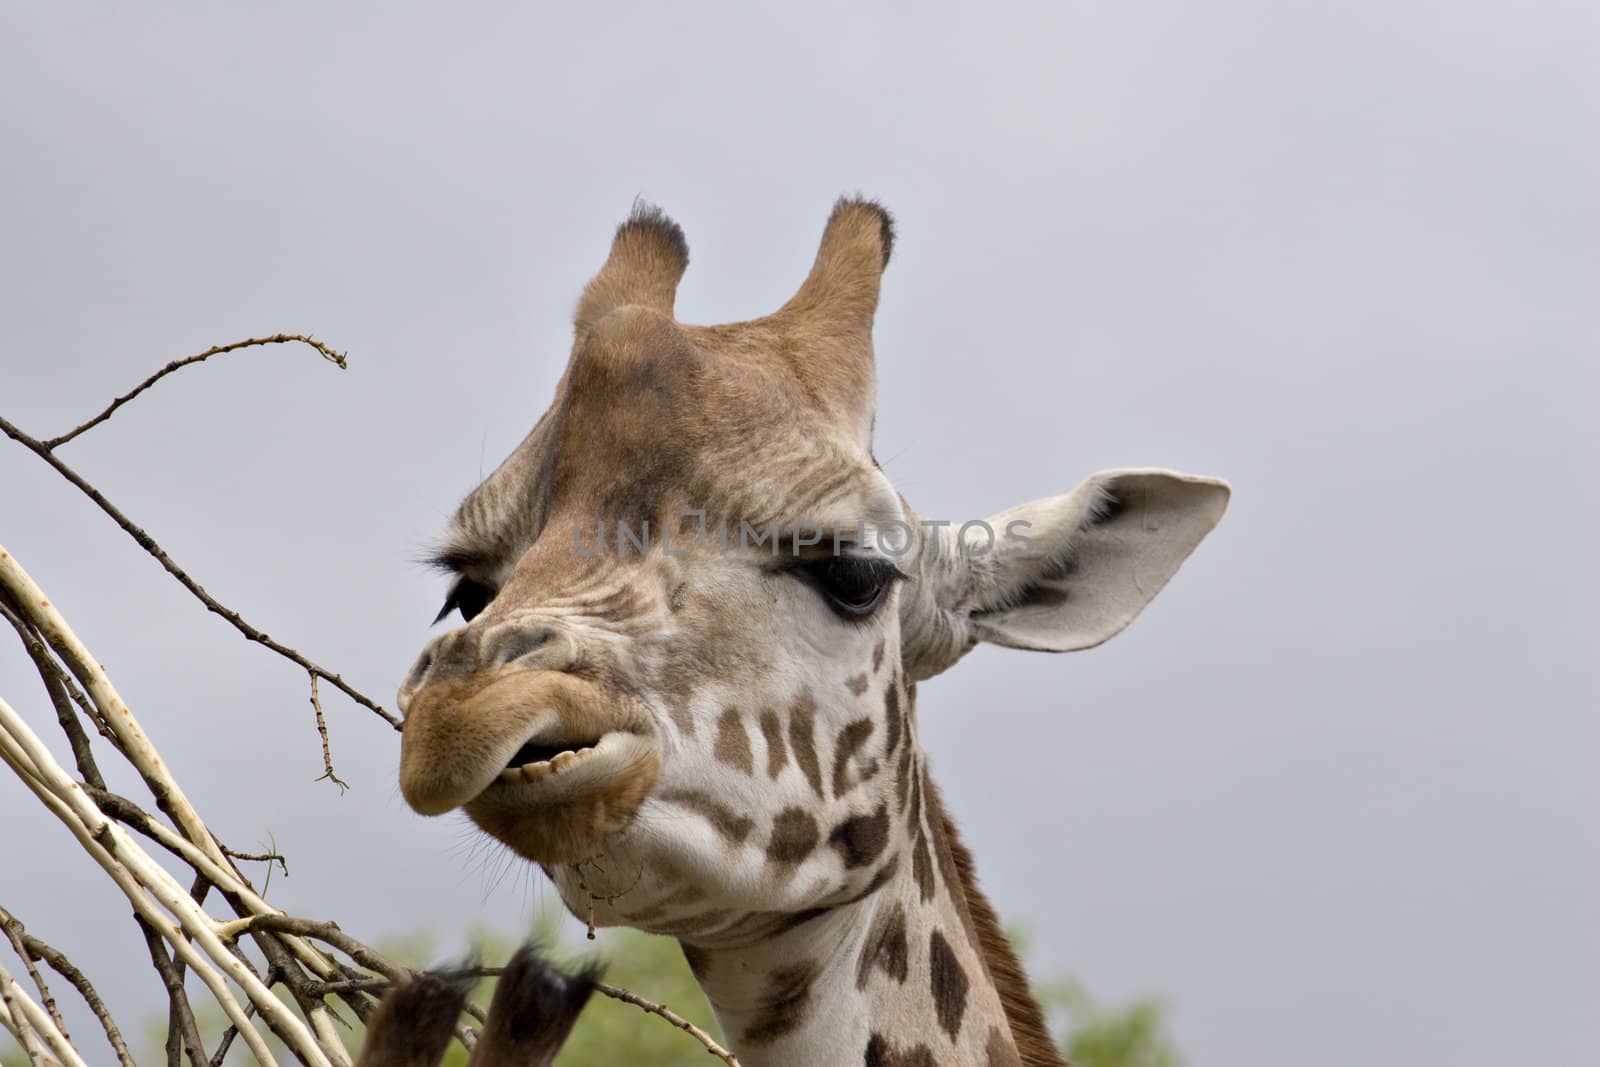 A close up of a giraffe